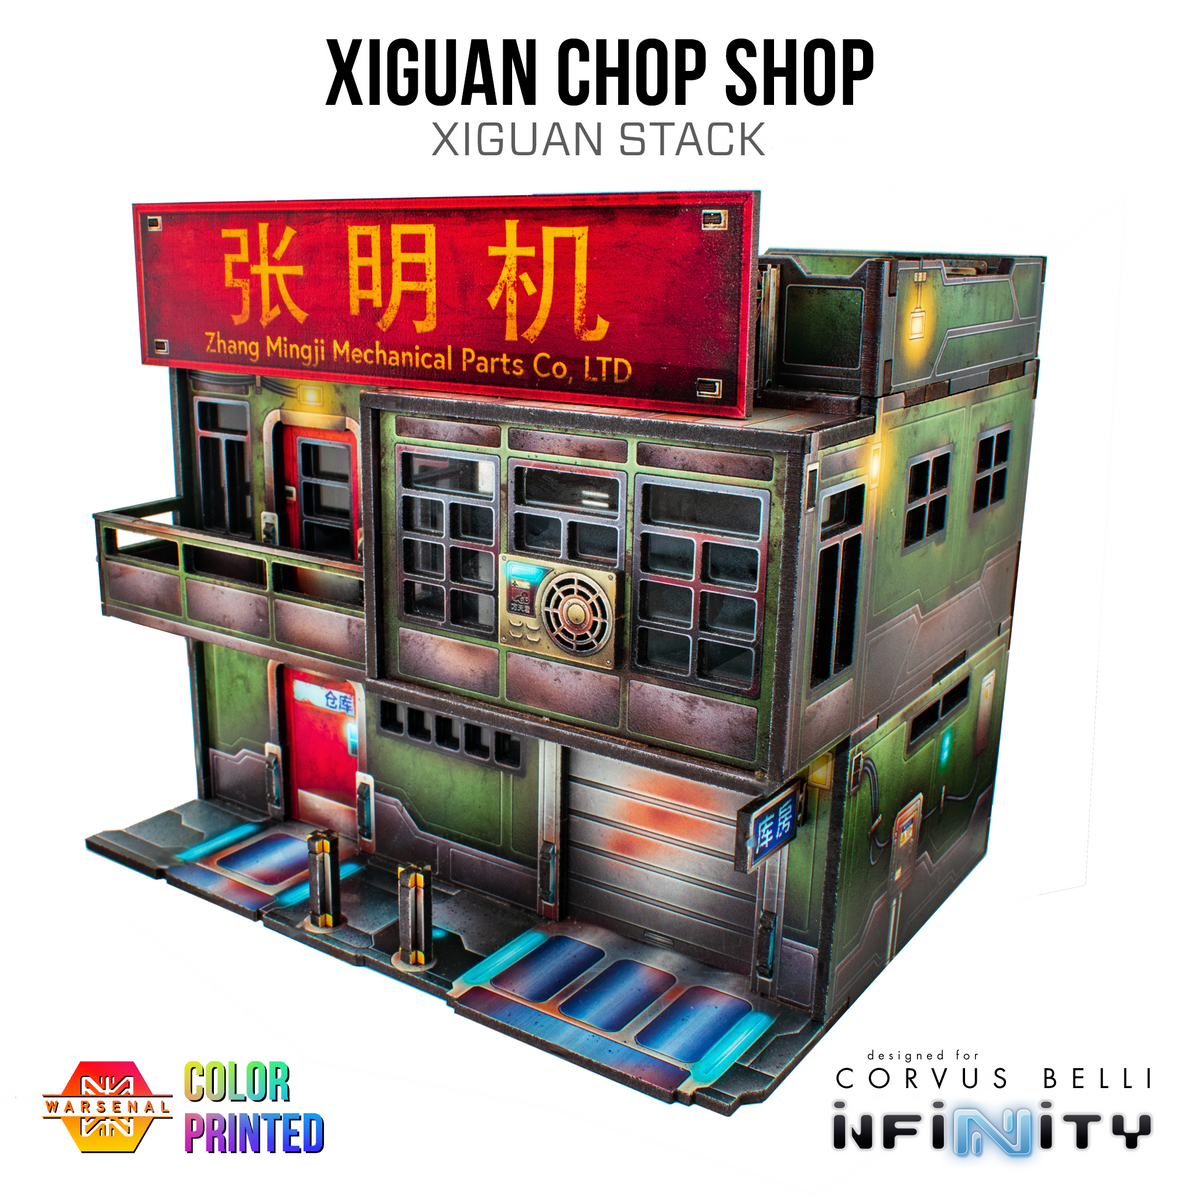 Pilas de Xiguan - Chop Shop